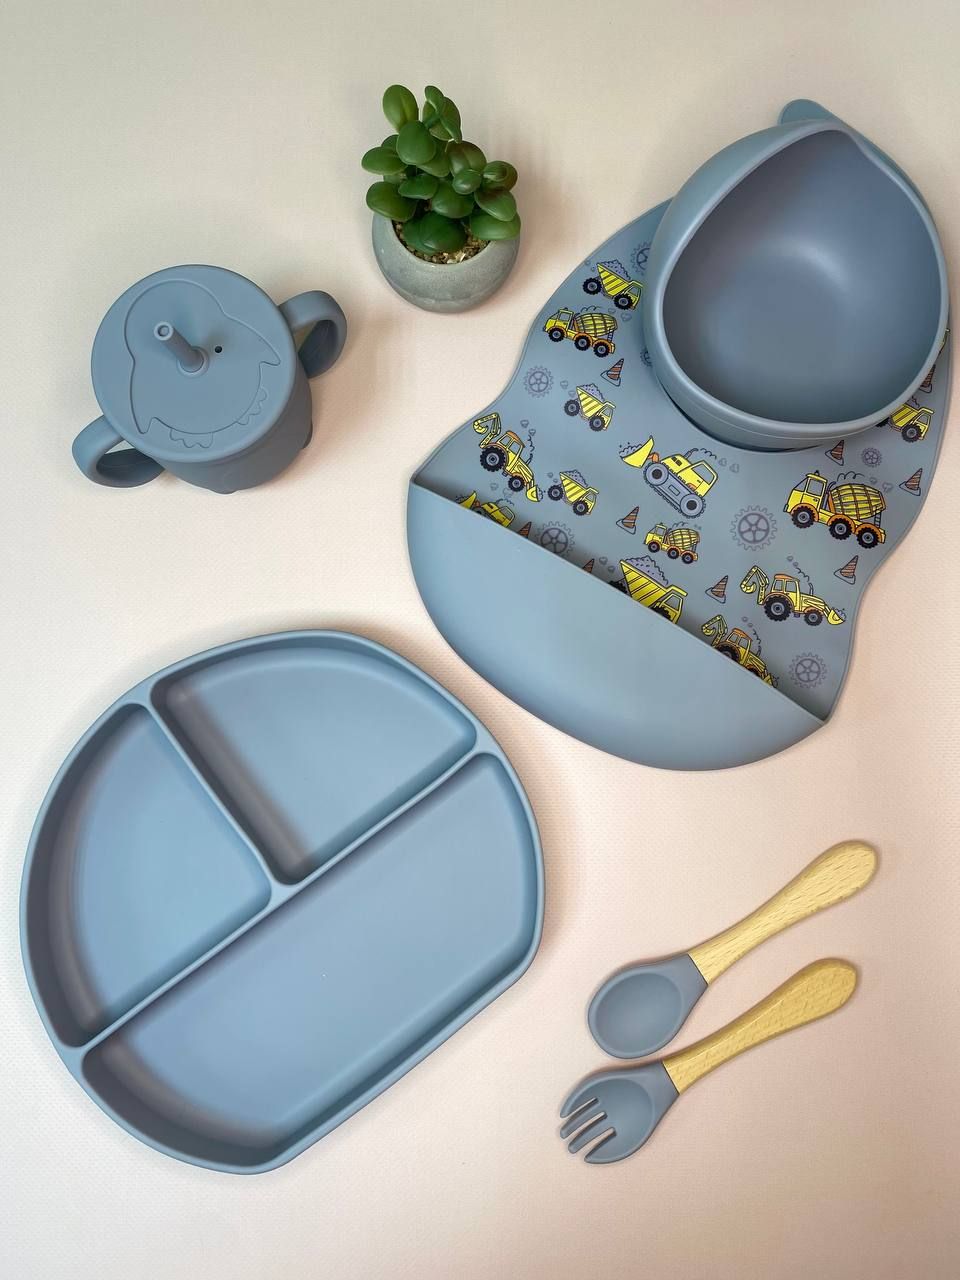 Комплект дитячого посуду з 6-ти предметів! + ПОДАРУНОК